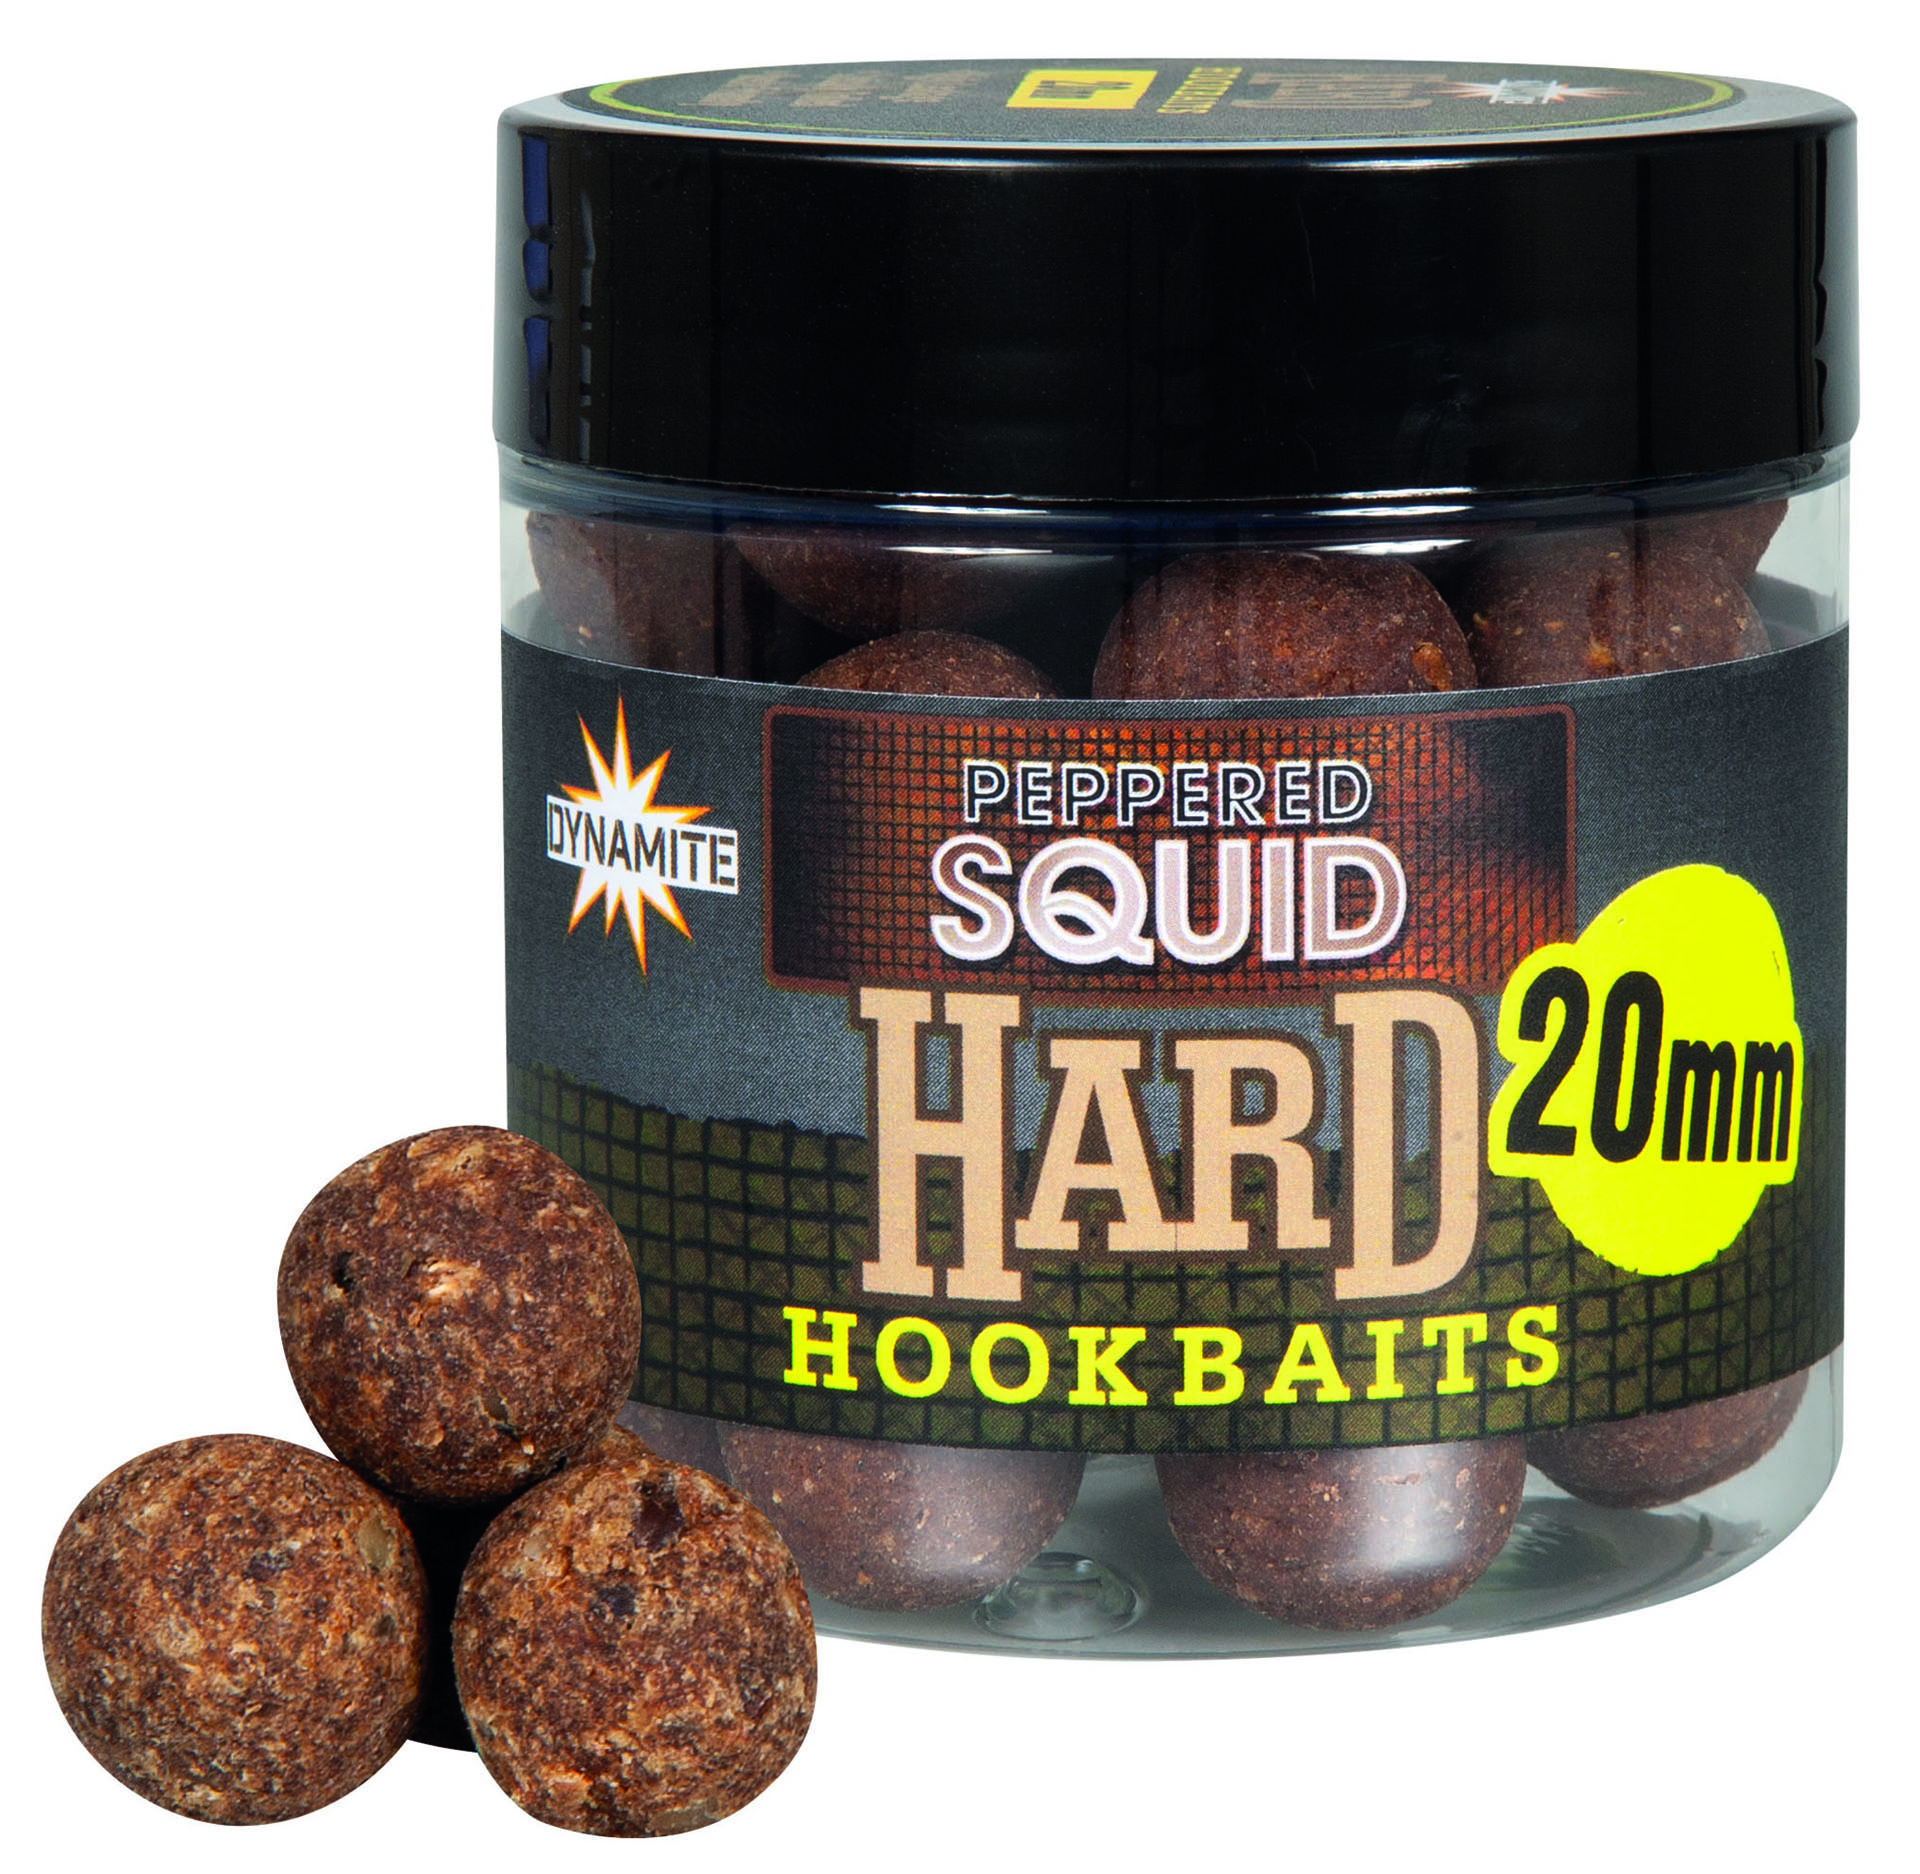 Dynamite Baits Peppered Squid Hard Hookbaits 20mm (75g)